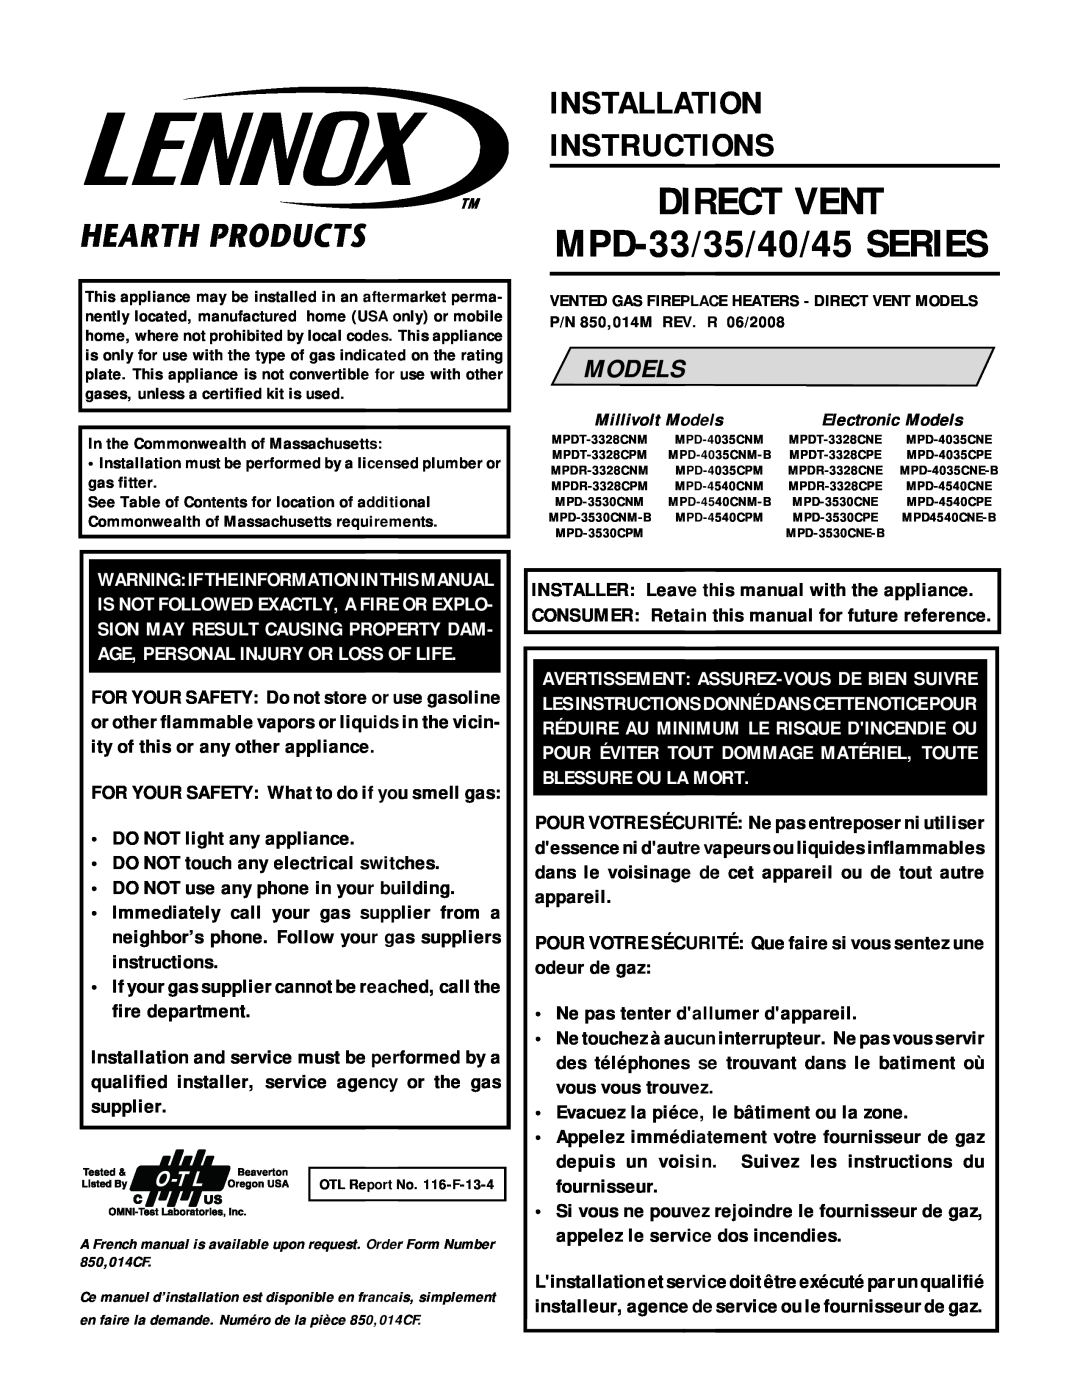 Lennox Hearth MPD-40 Series installation instructions DIRECT VENT MPD-33/35/40/45SERIES, Installation Instructions, Models 